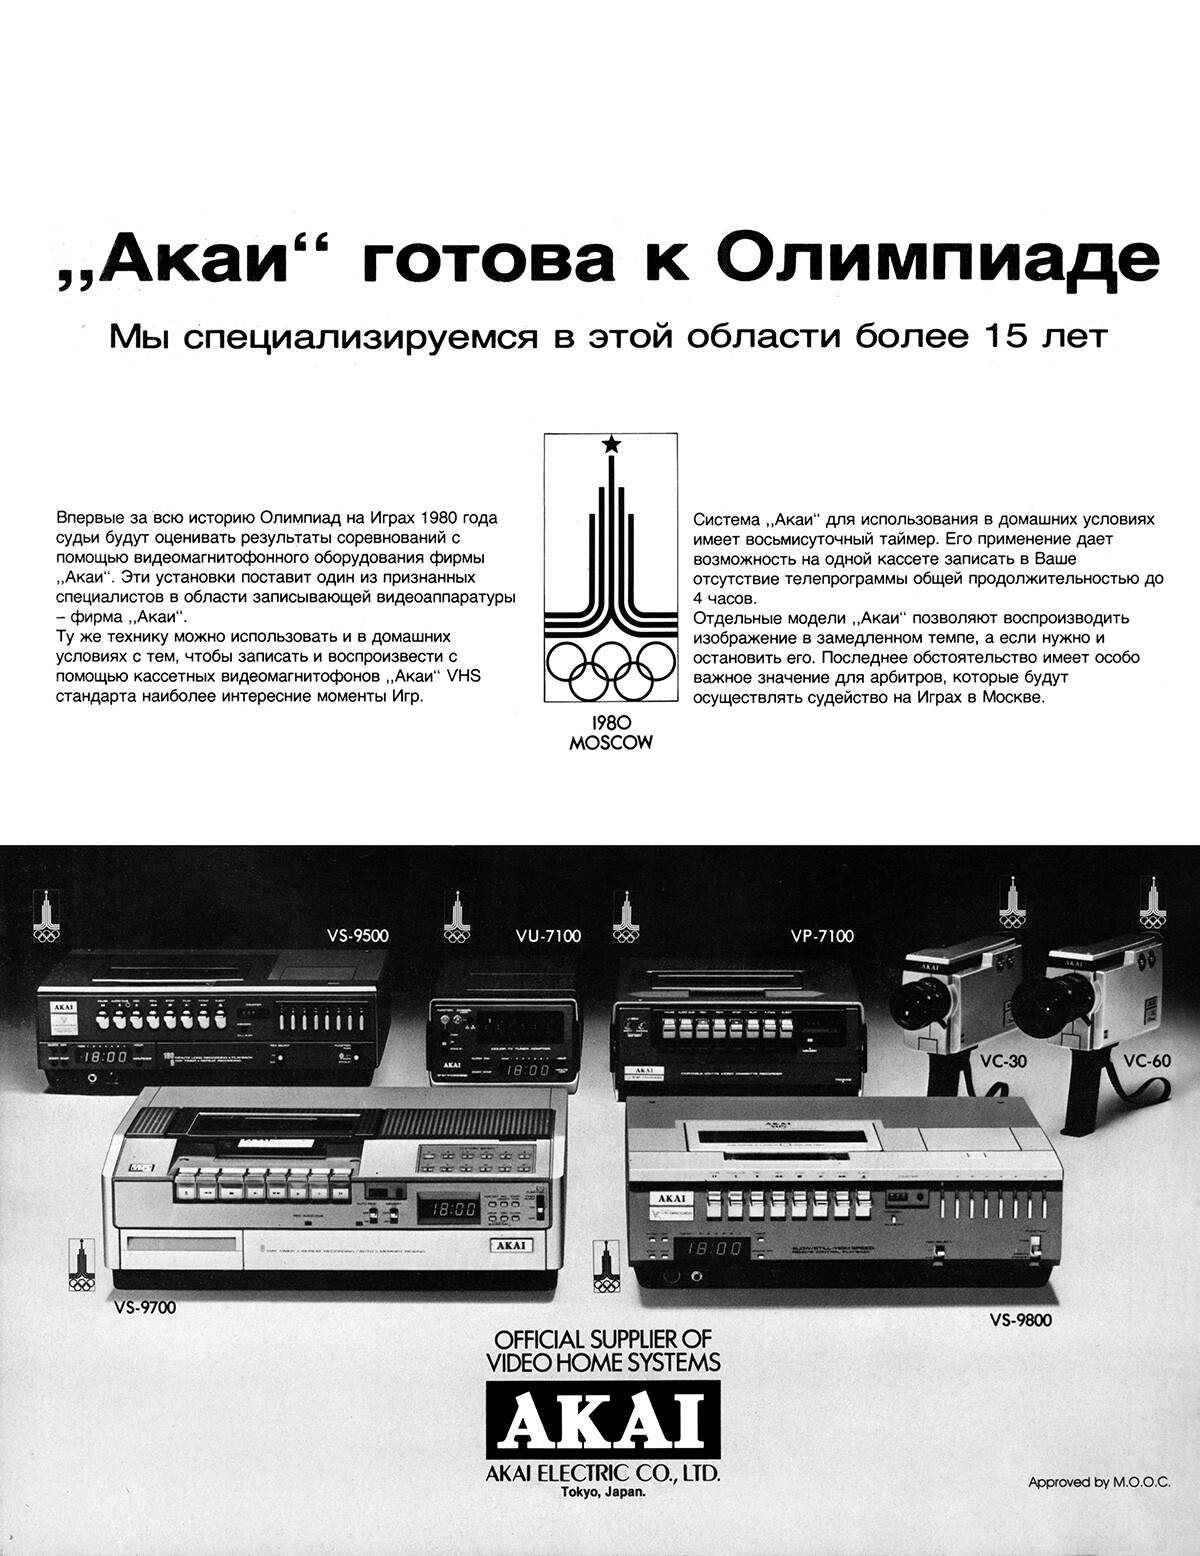 Publicité du magazine Olimpiïskaïa panorama de 1980, publié avant les Jeux olympiques